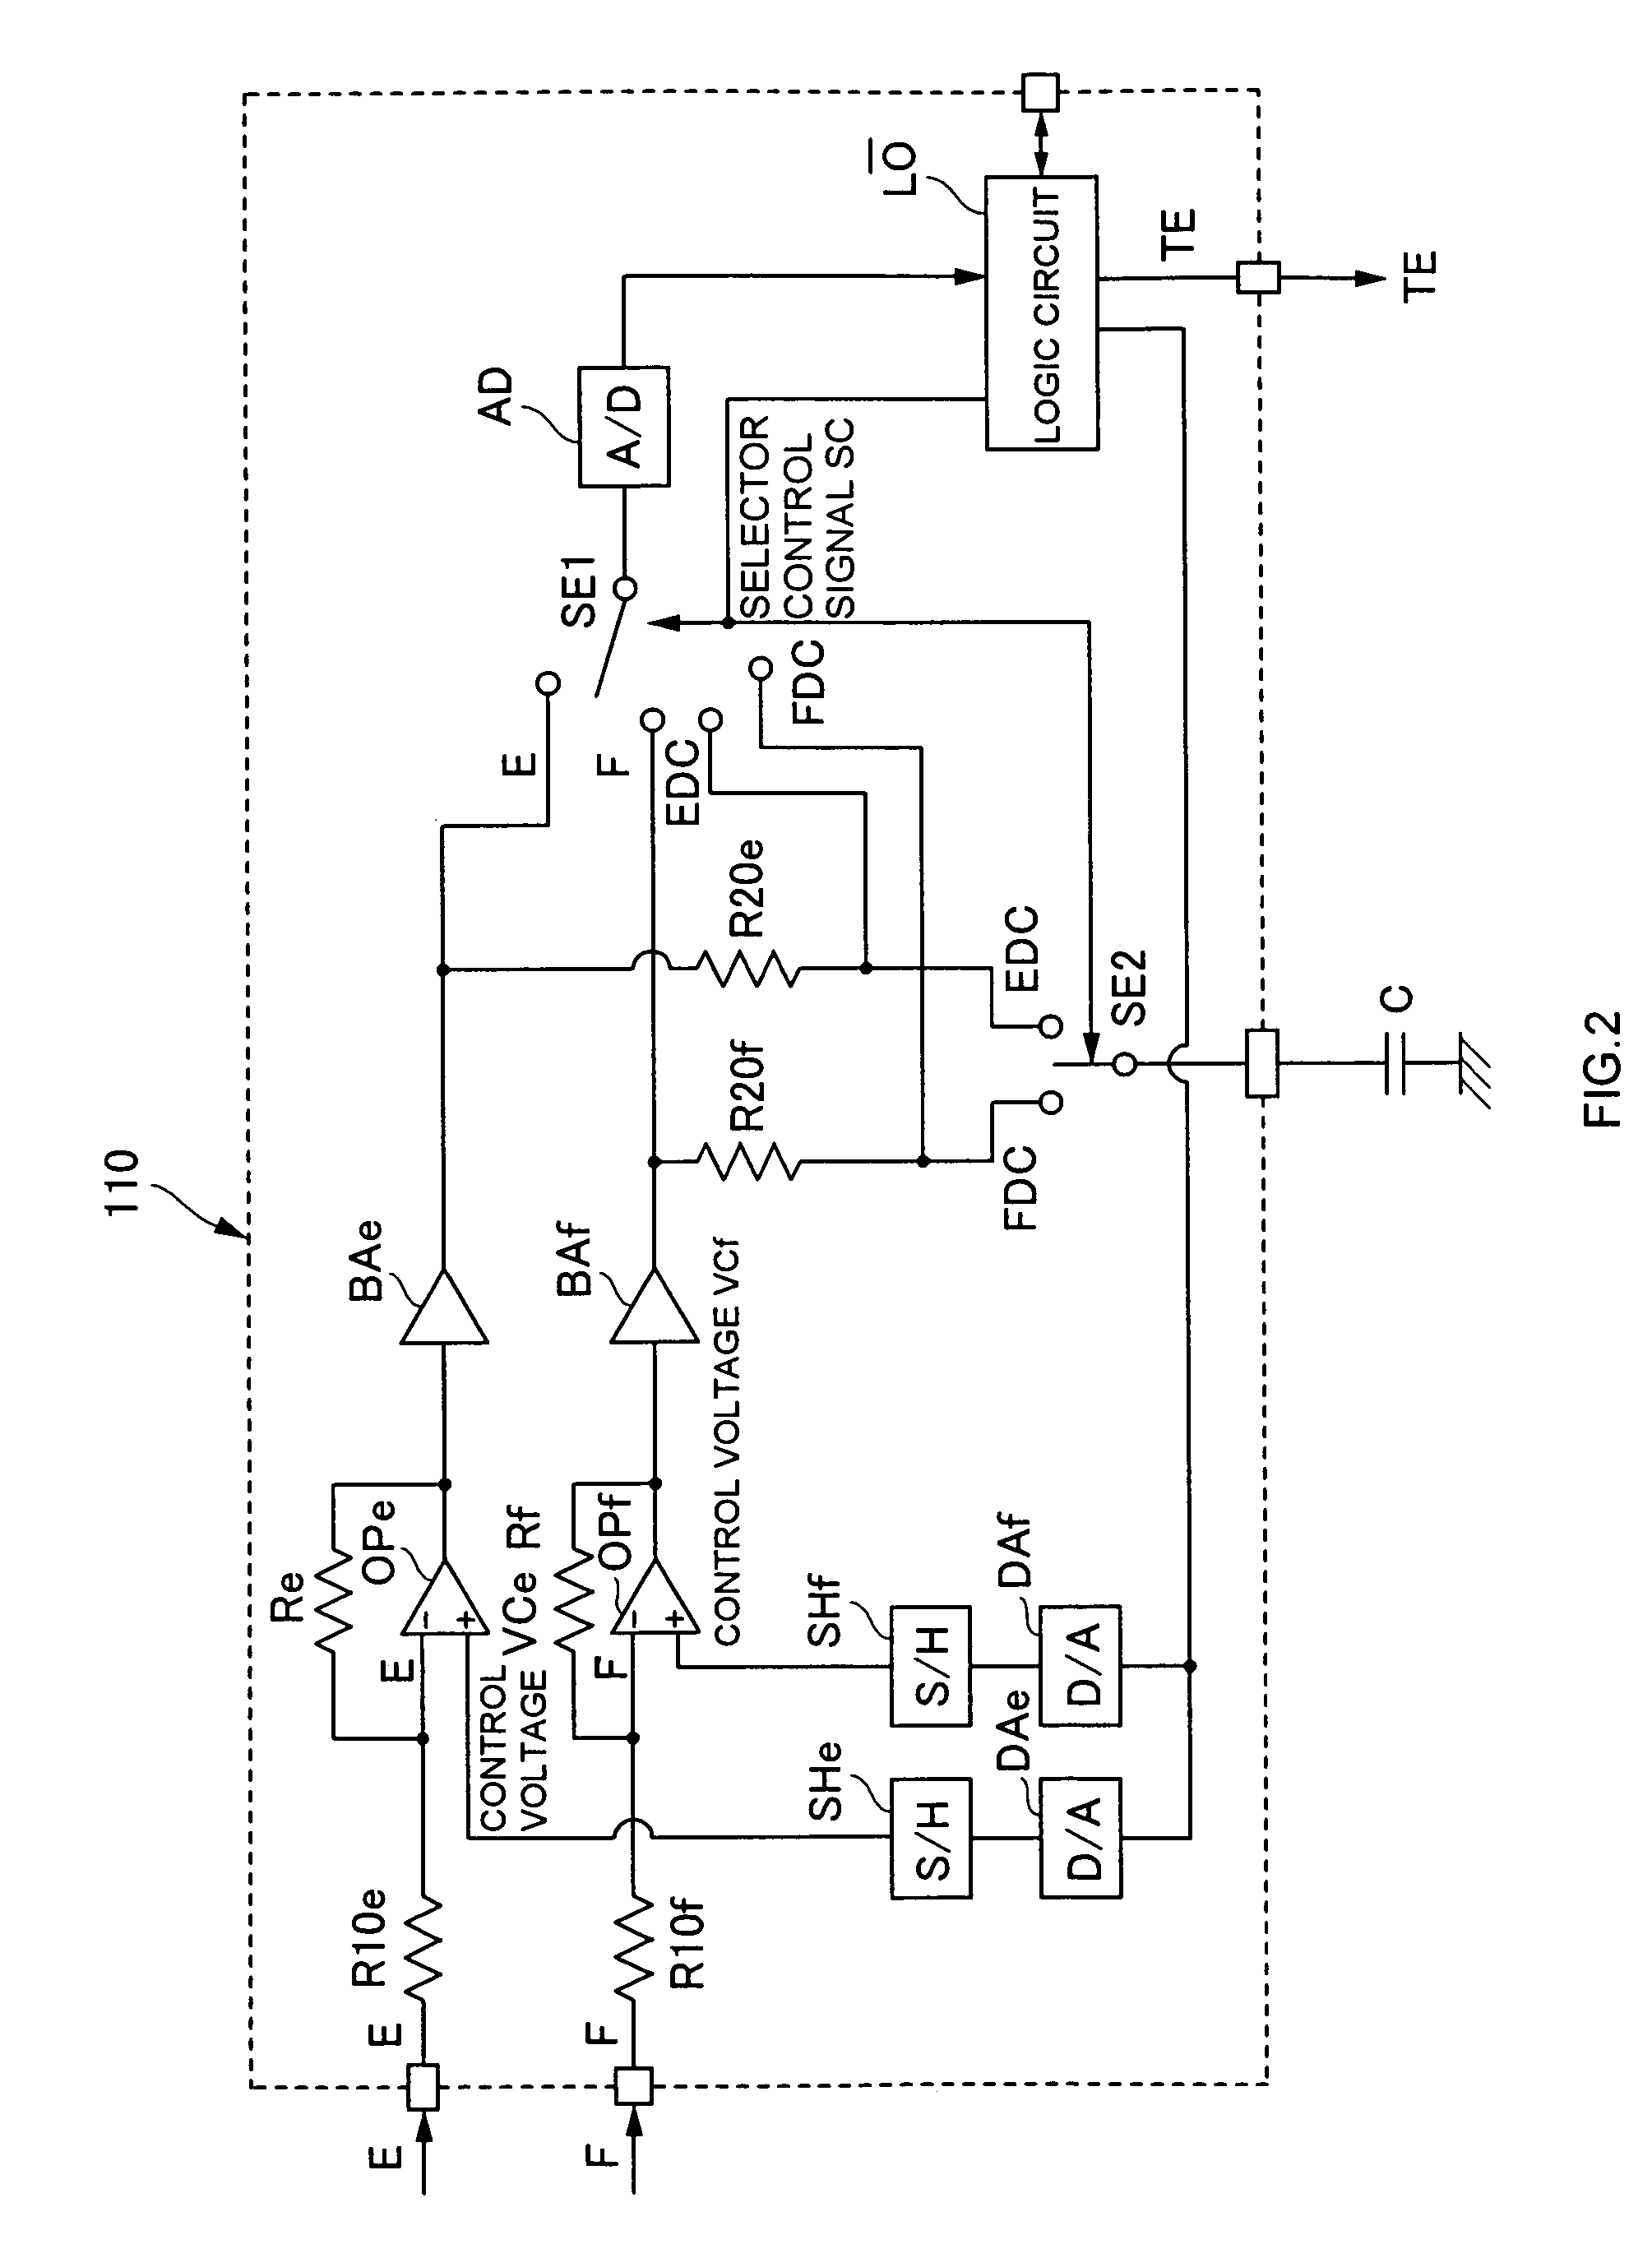 Offset adjusting circuit for optical disc and offset adjusting method